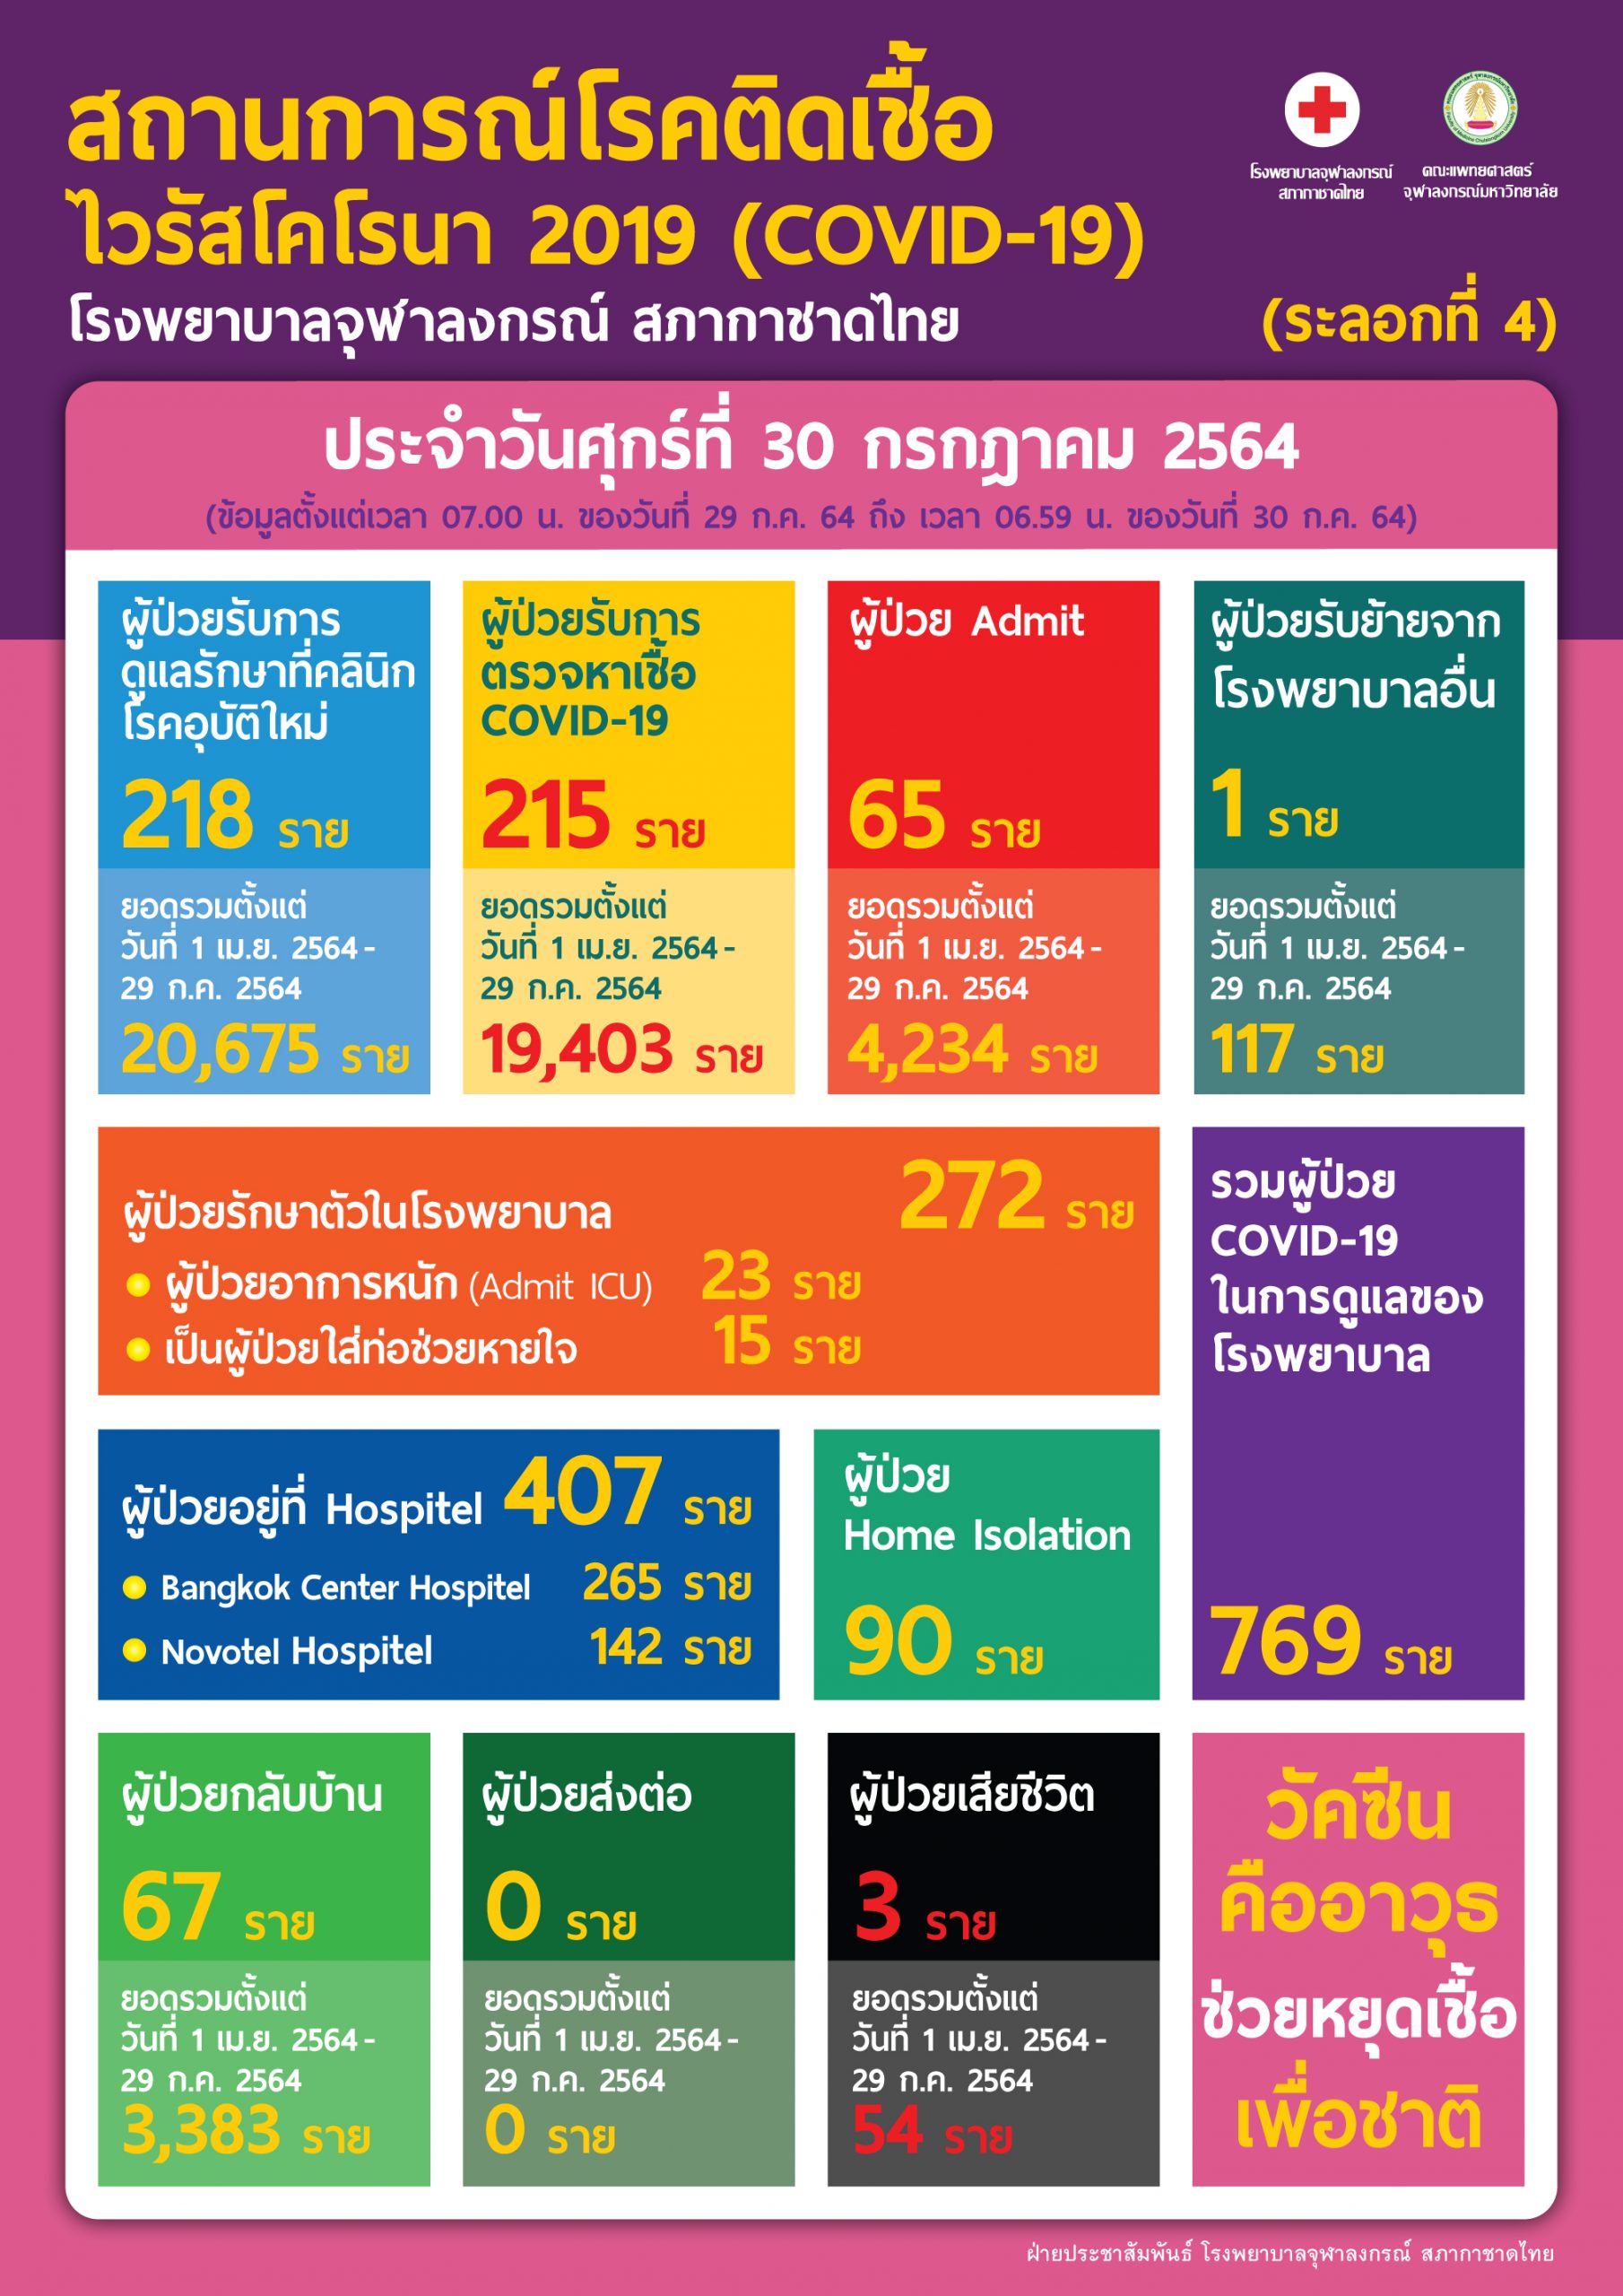 สถานการณ์โรคติดเชื้อไวรัสโคโรนา 2019 (COVID-19) (ระลอกที่ 4) โรงพยาบาลจุฬาลงกรณ์ สภากาชาดไทย  ประจำวันศุกร์ที่ 30 กรกฎาคม 2564